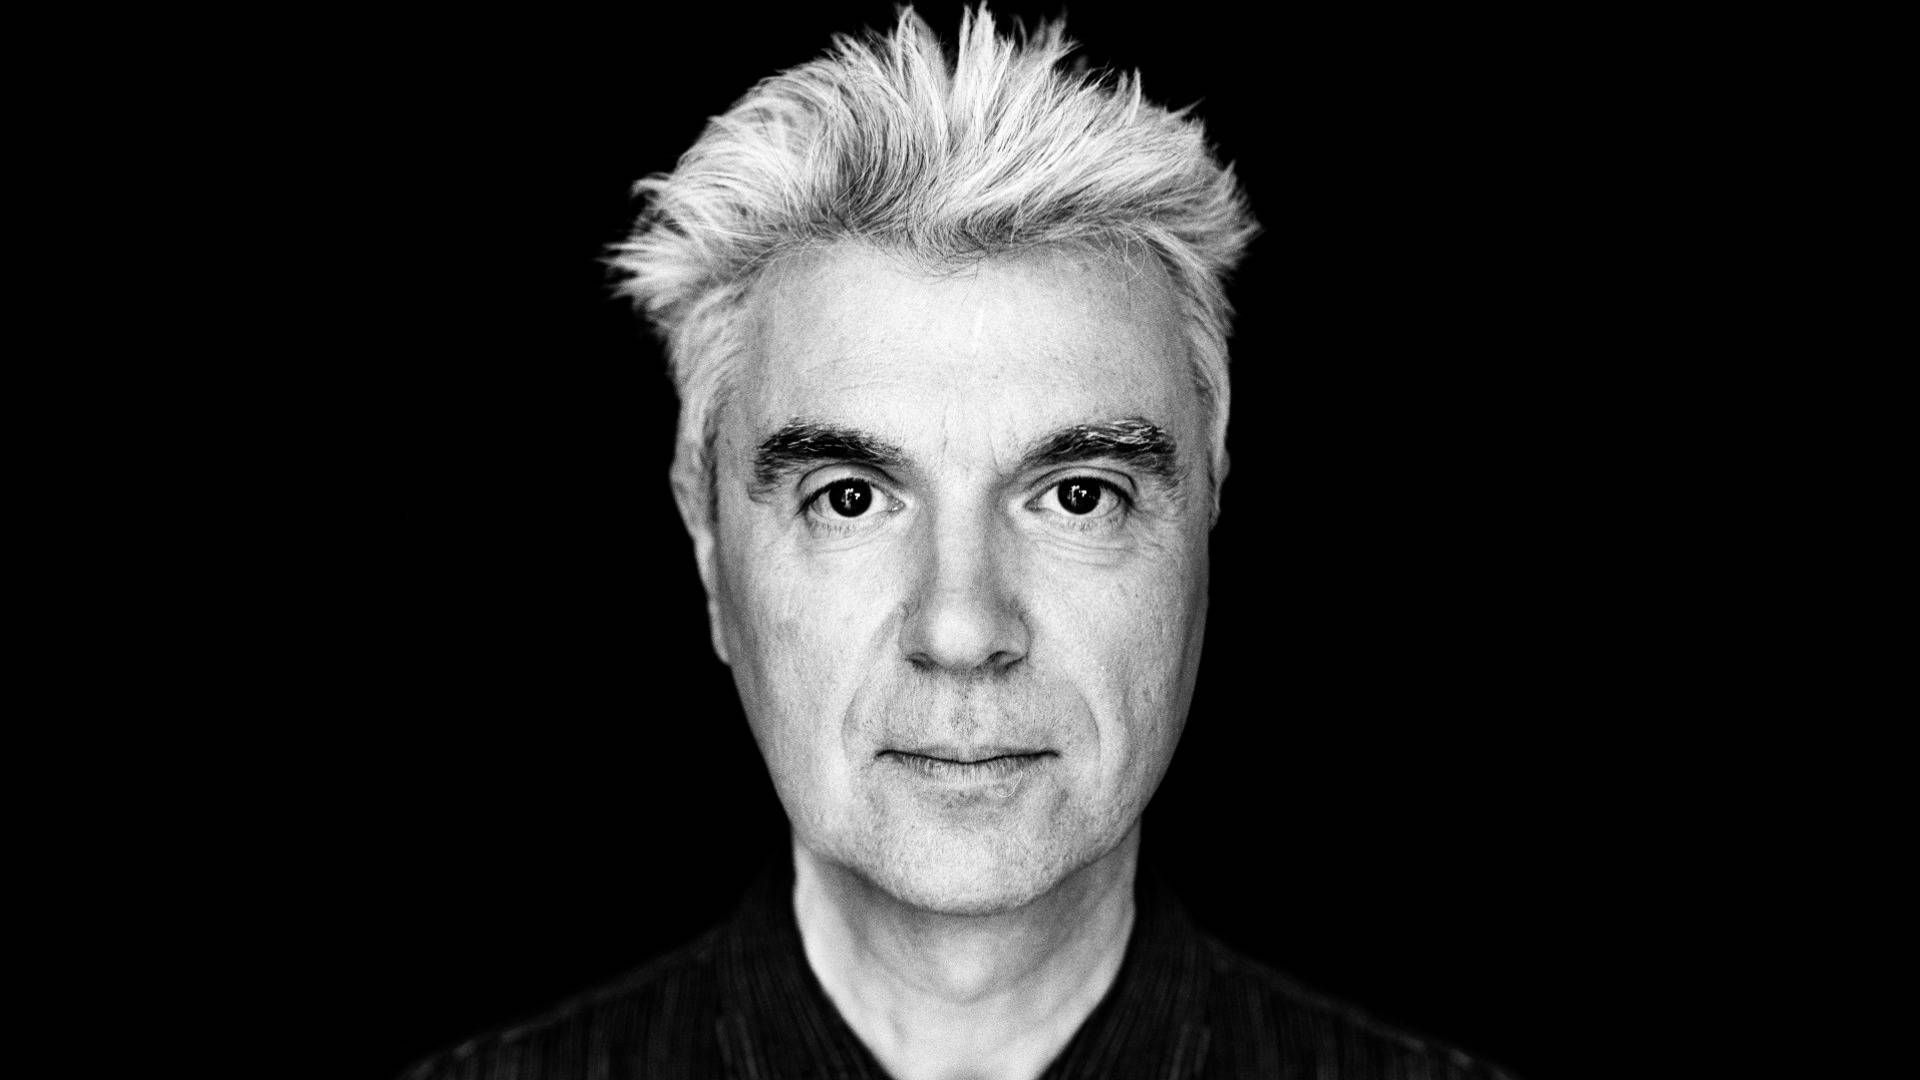 David Byrne sort og hvid profilfotografi vægmaleri Wallpaper